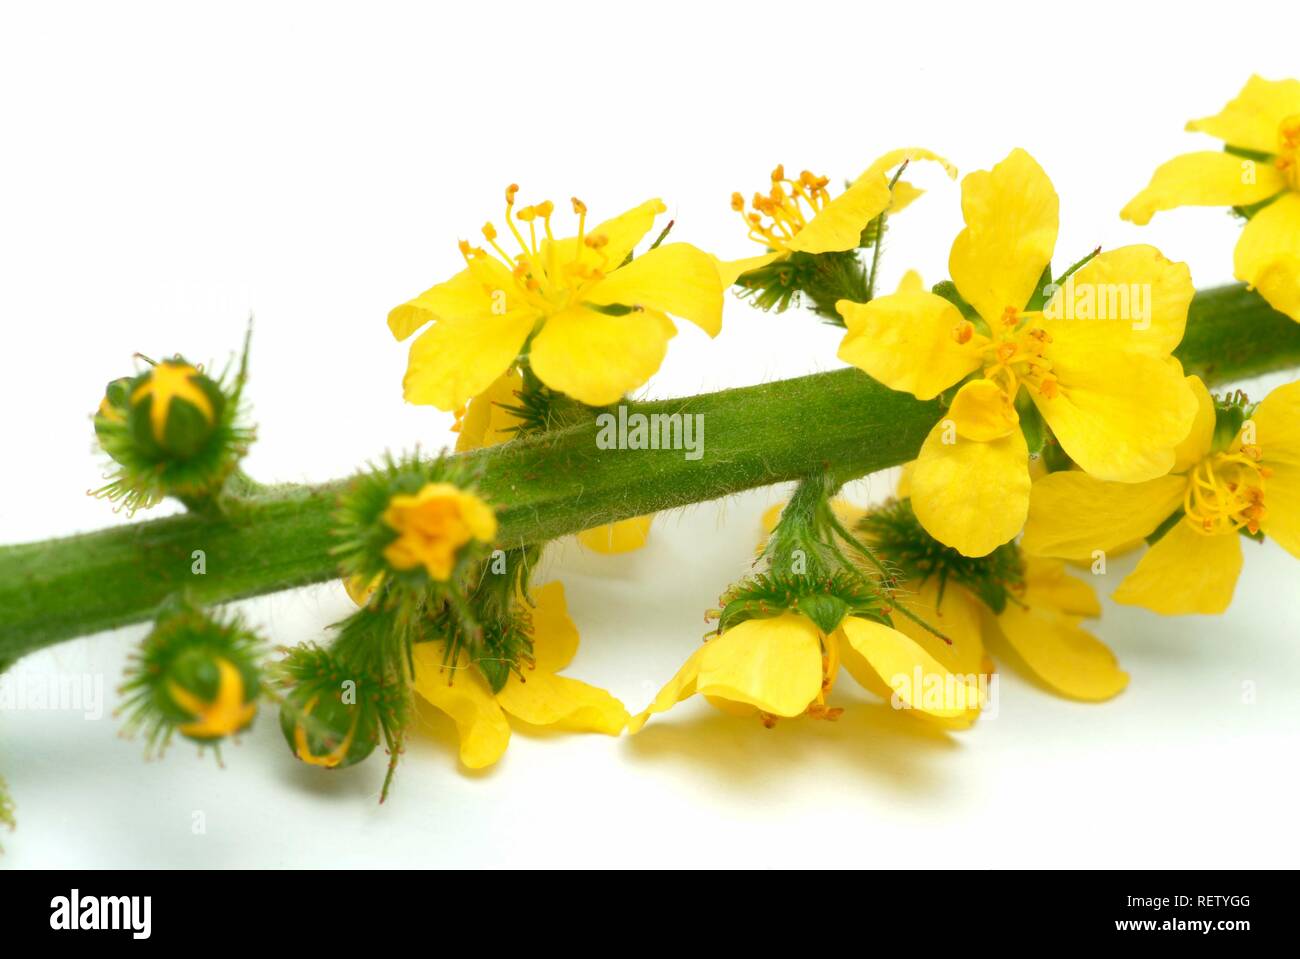 Sticklewort (Agrimonia eupatoria), plante médicinale Banque D'Images